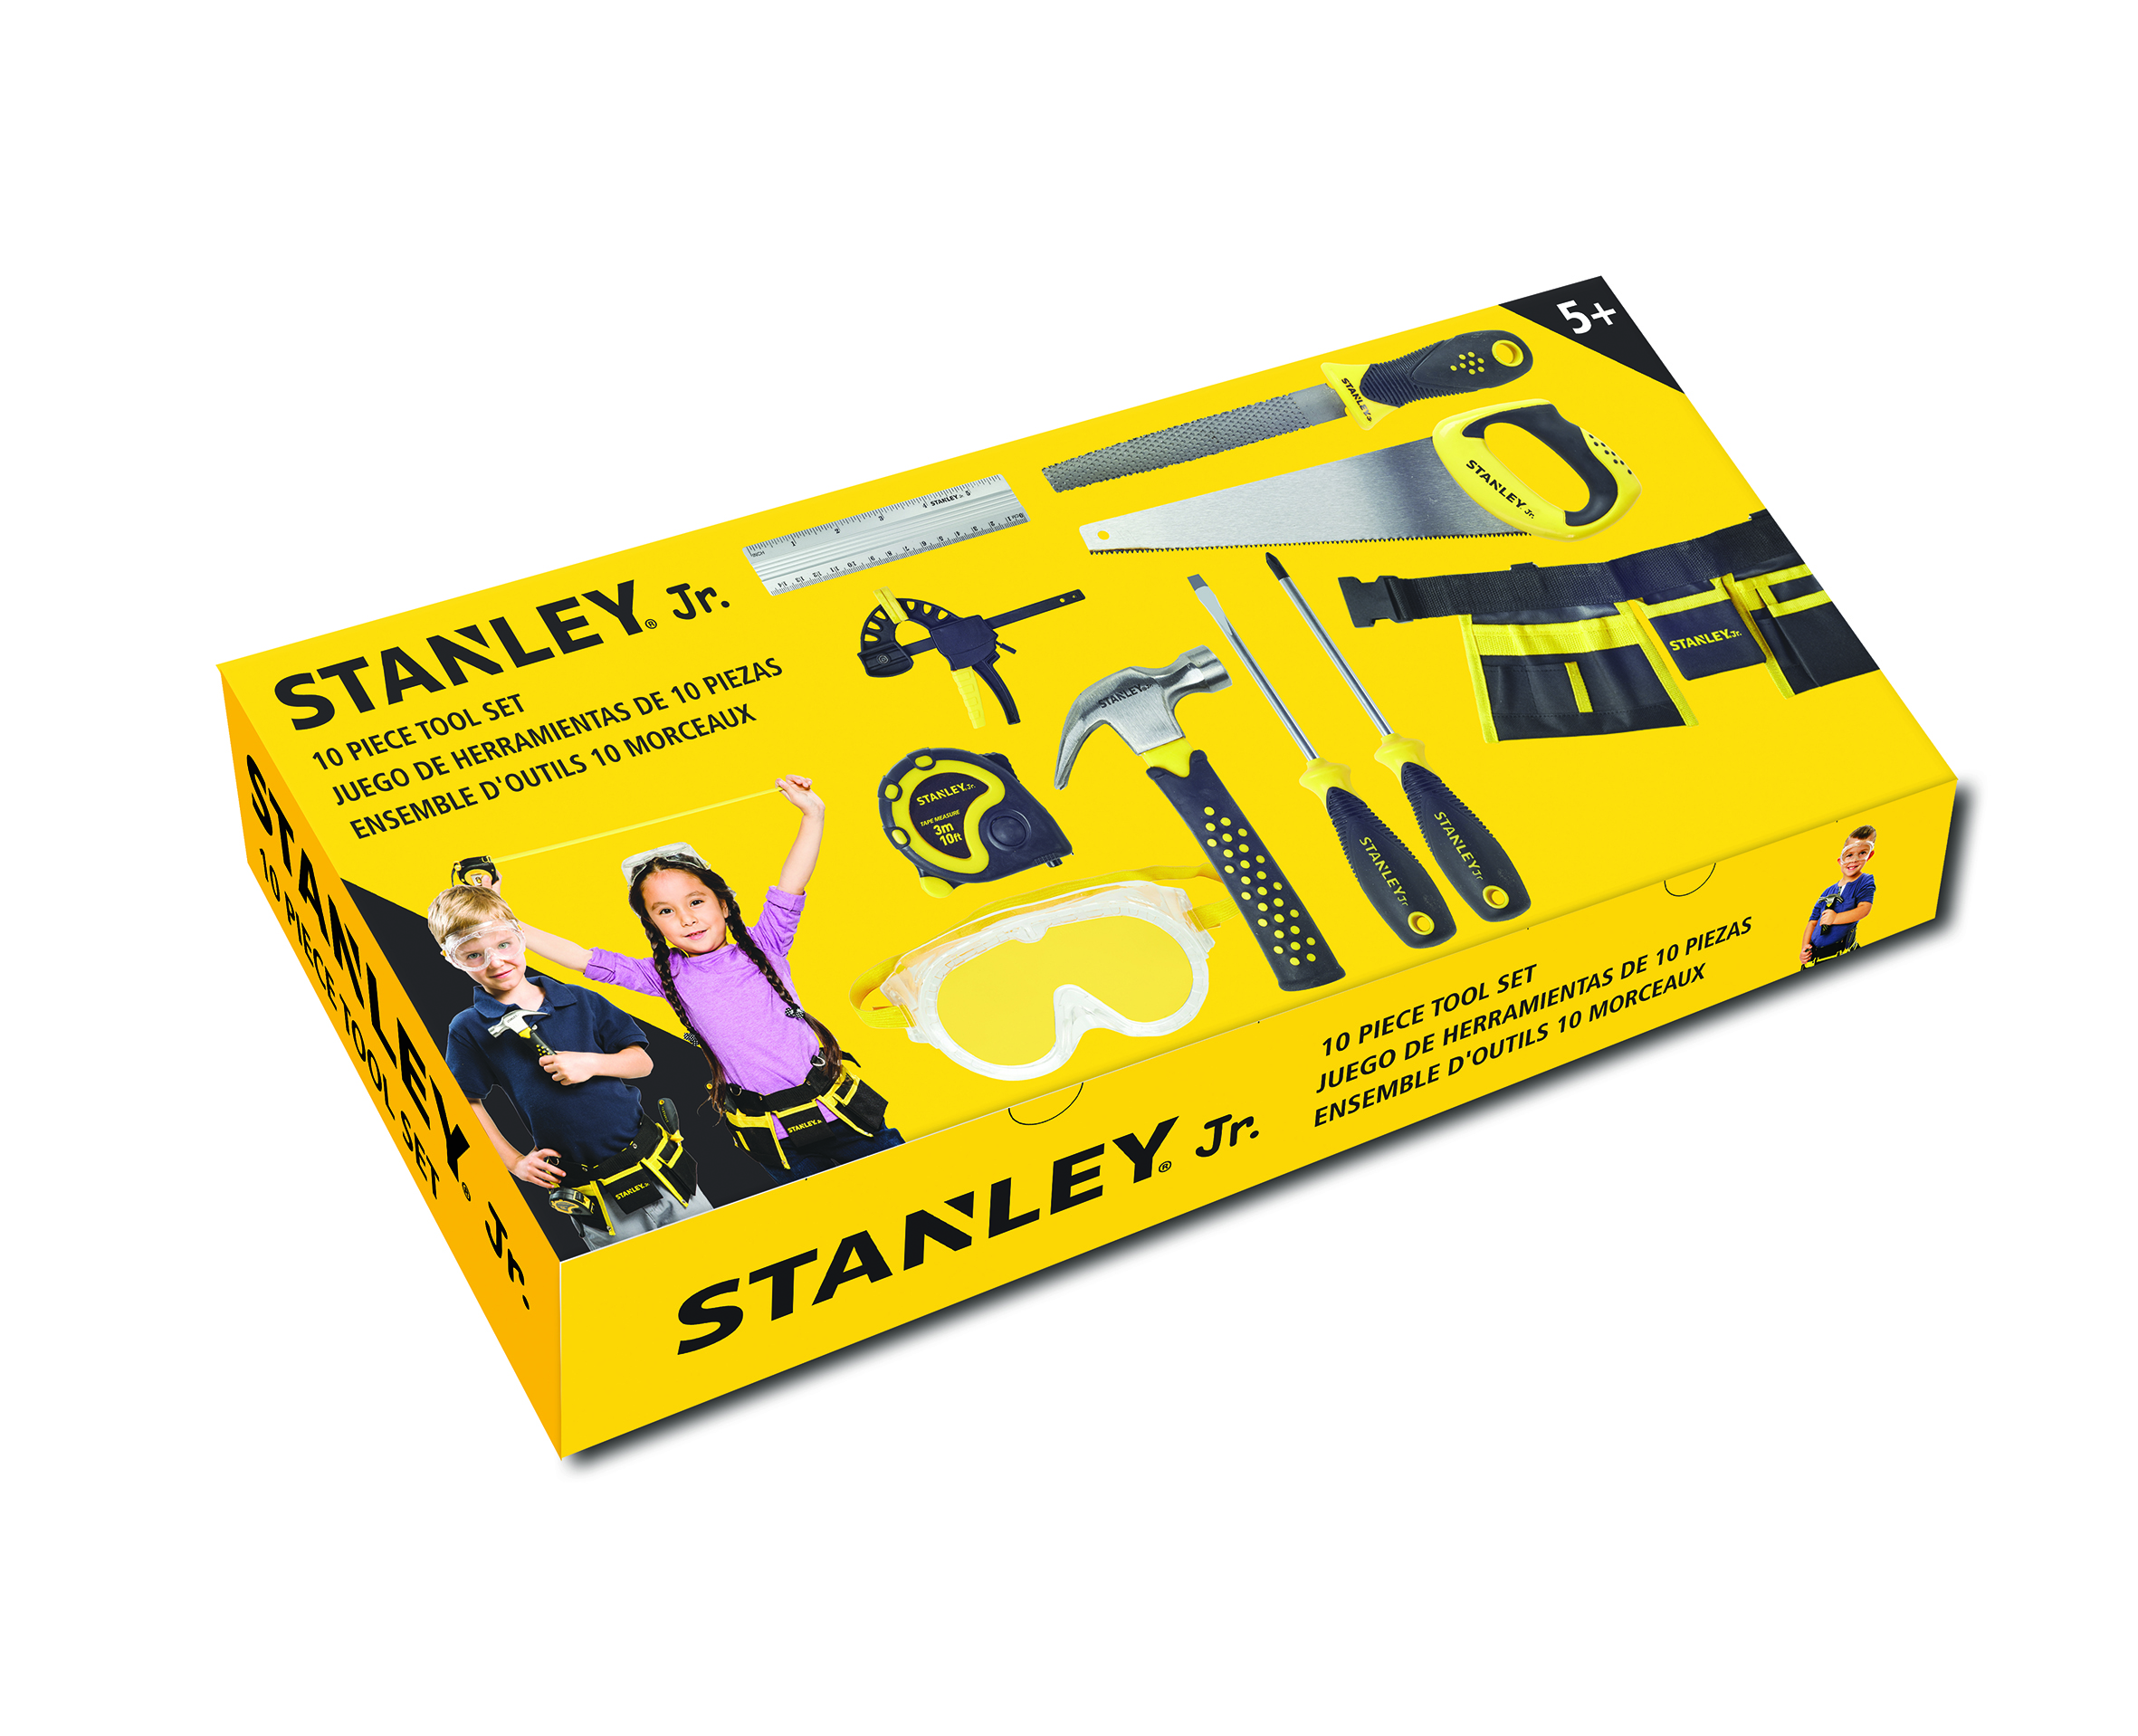 Stanley Jr. - Ensemble de 10 outils - Construction